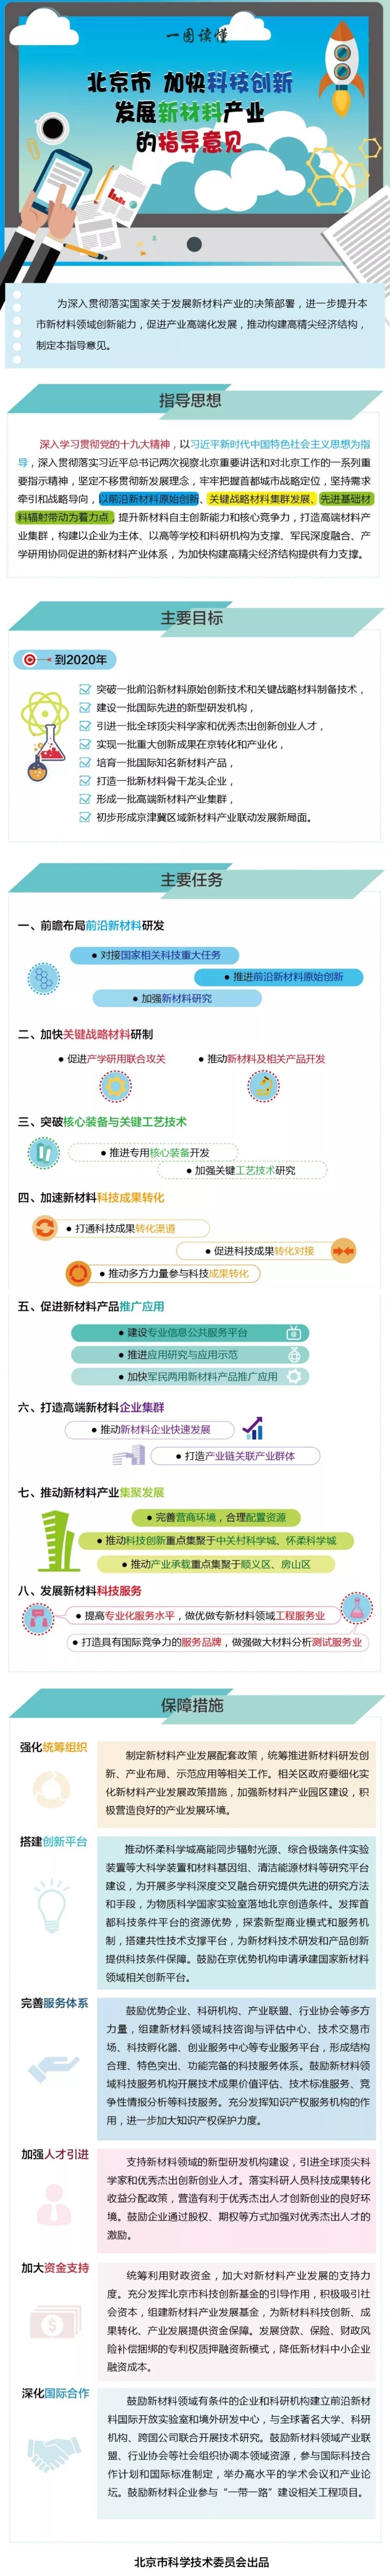 《北京市加快科技创新发展新材料产业的指导意见》.jpg